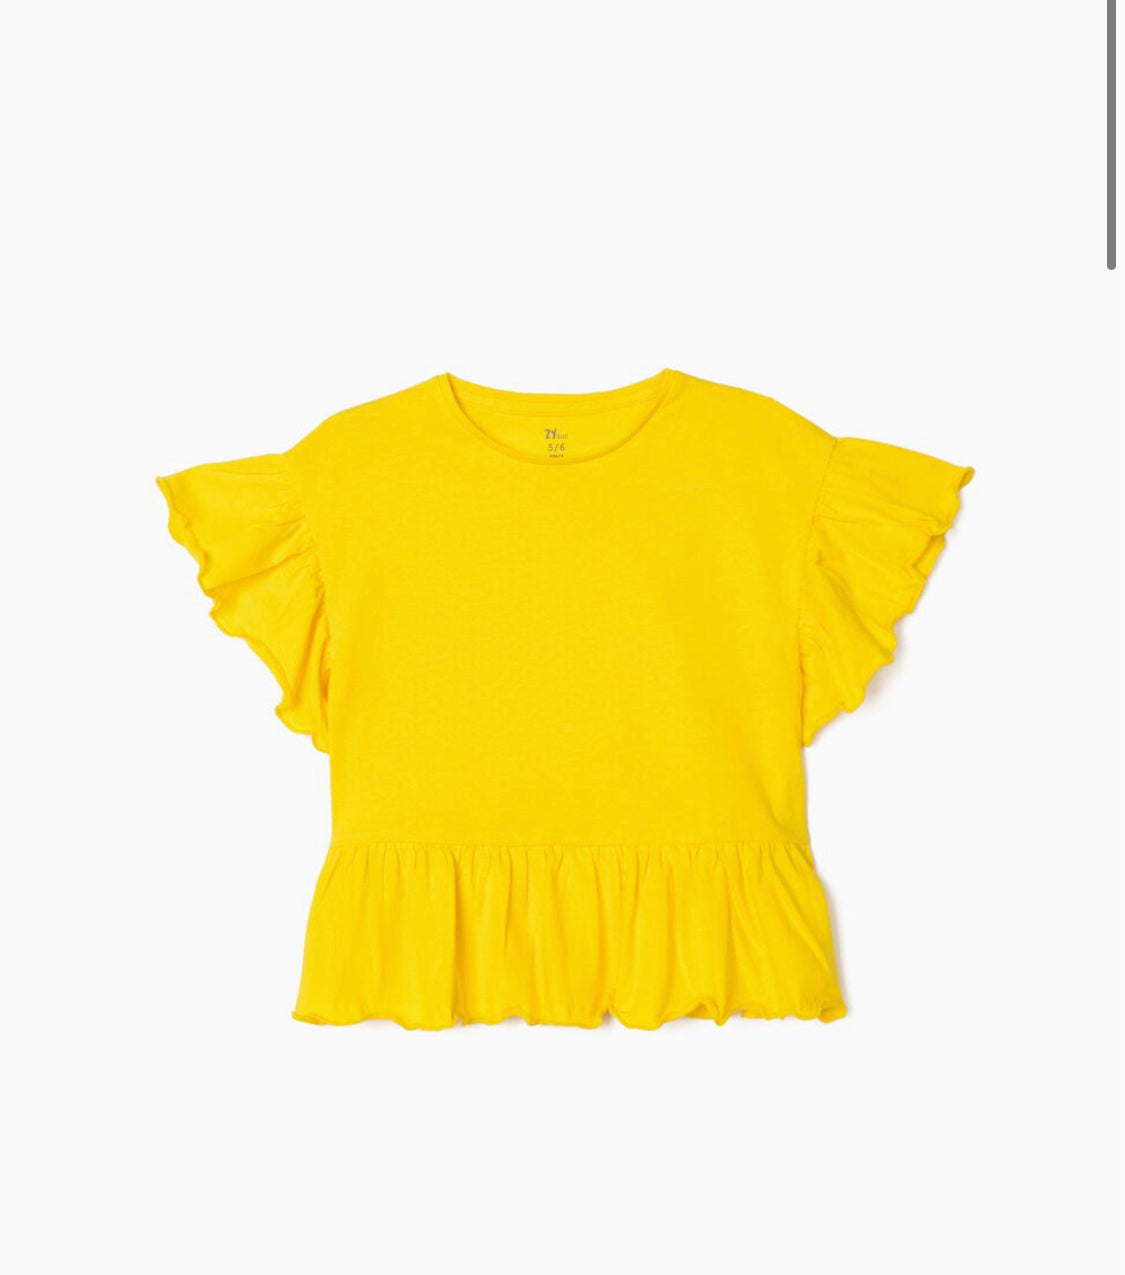 Camiseta Con Volantes Para Niña Amarilla lolimariscalmoda 5.99